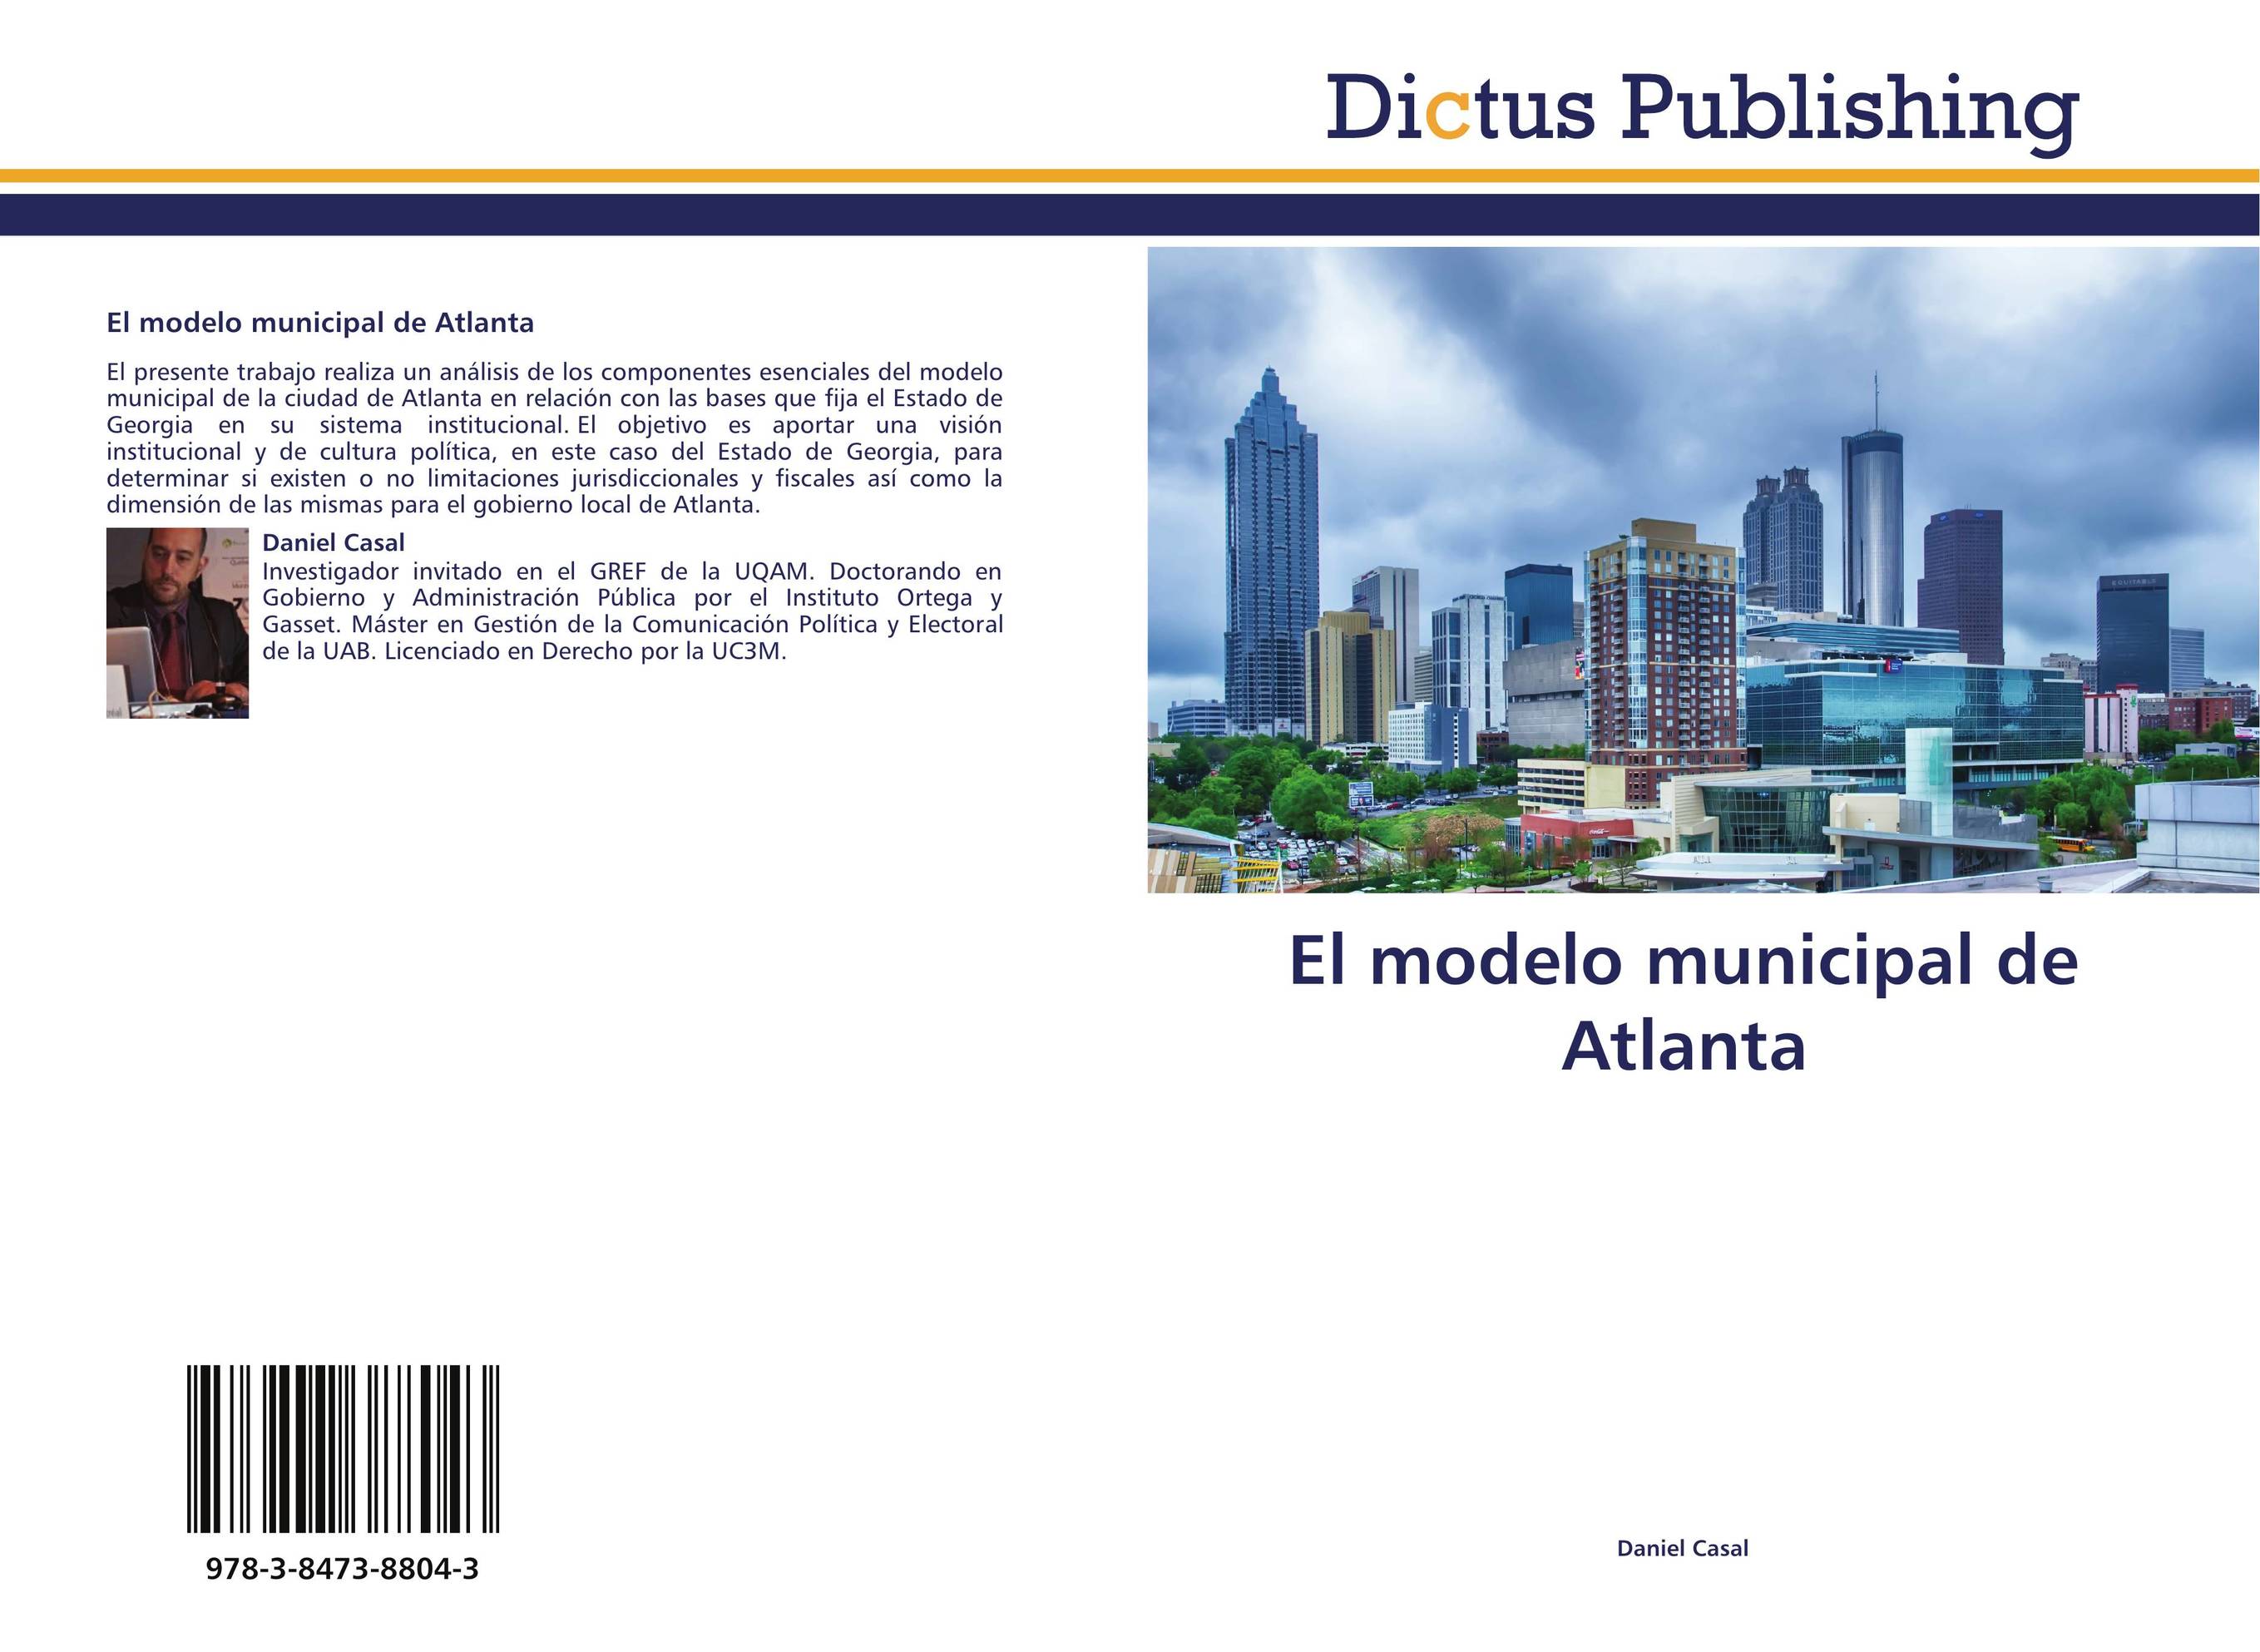 El modelo municipal de Atlanta